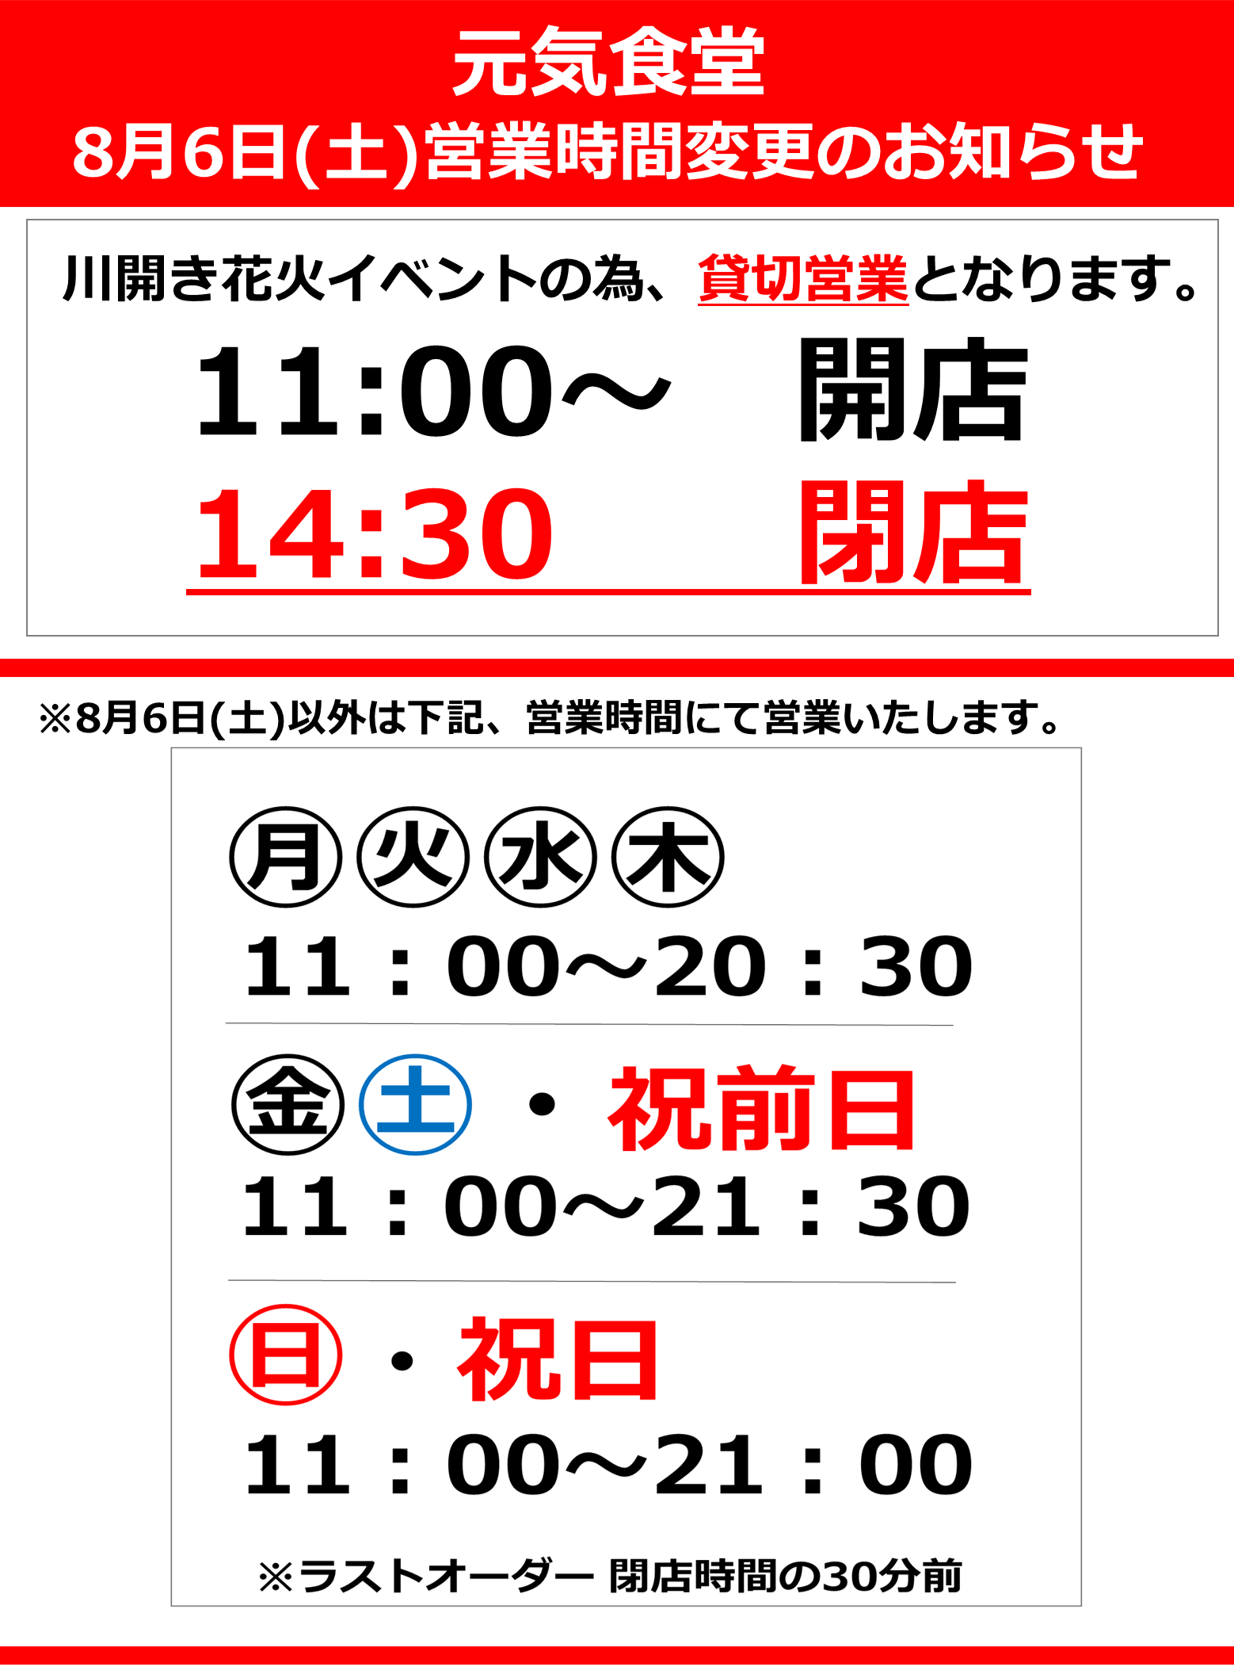 8月6日(土) 元気食堂営業時間変更のお知らせ